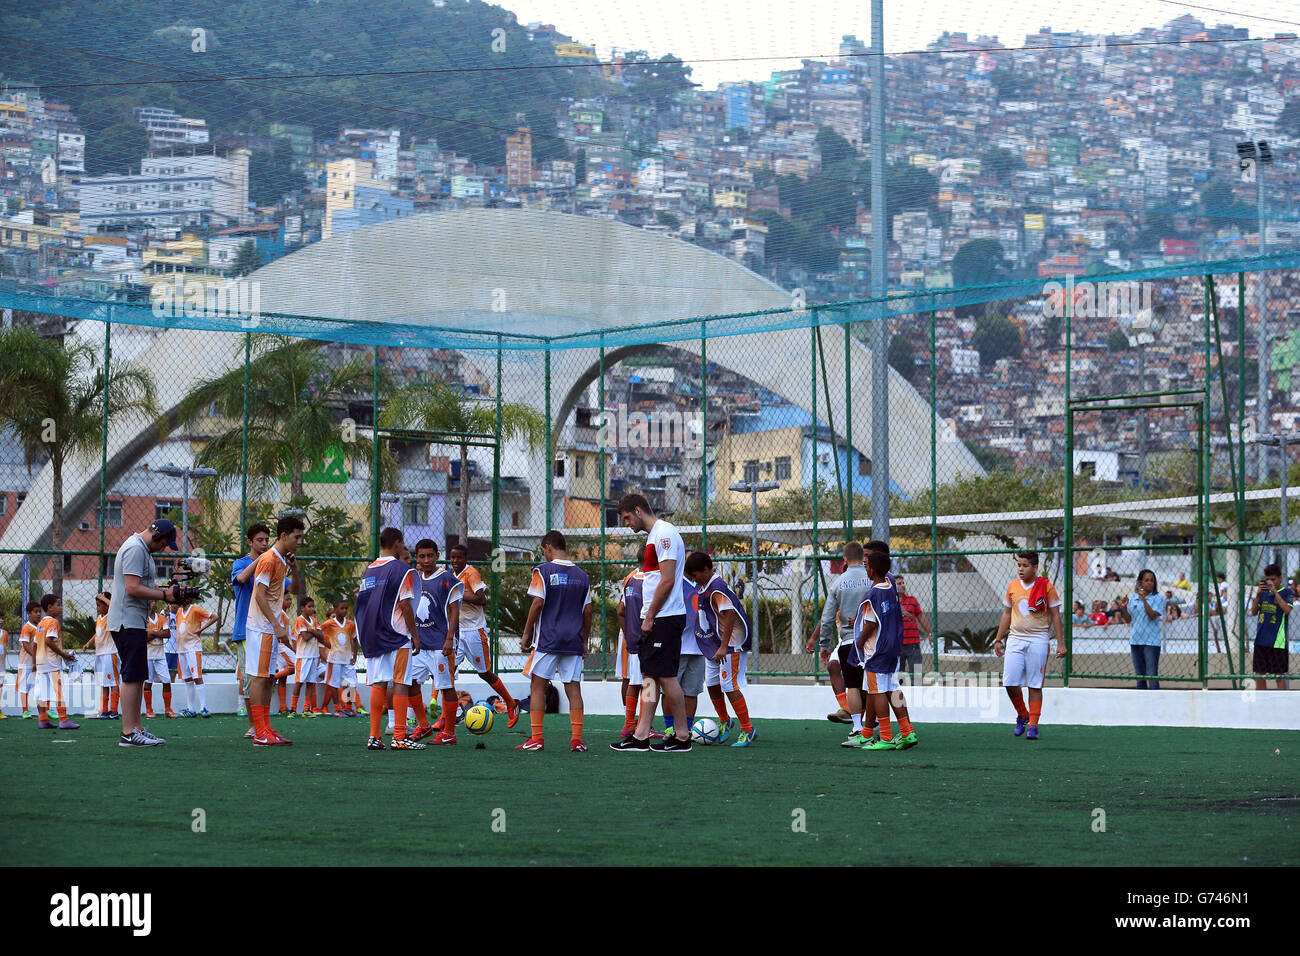 England's Fraser Forster during a visit to the Complexo Esportivo da Rocinha, Rio de Janeiro, Brazil. Stock Photo